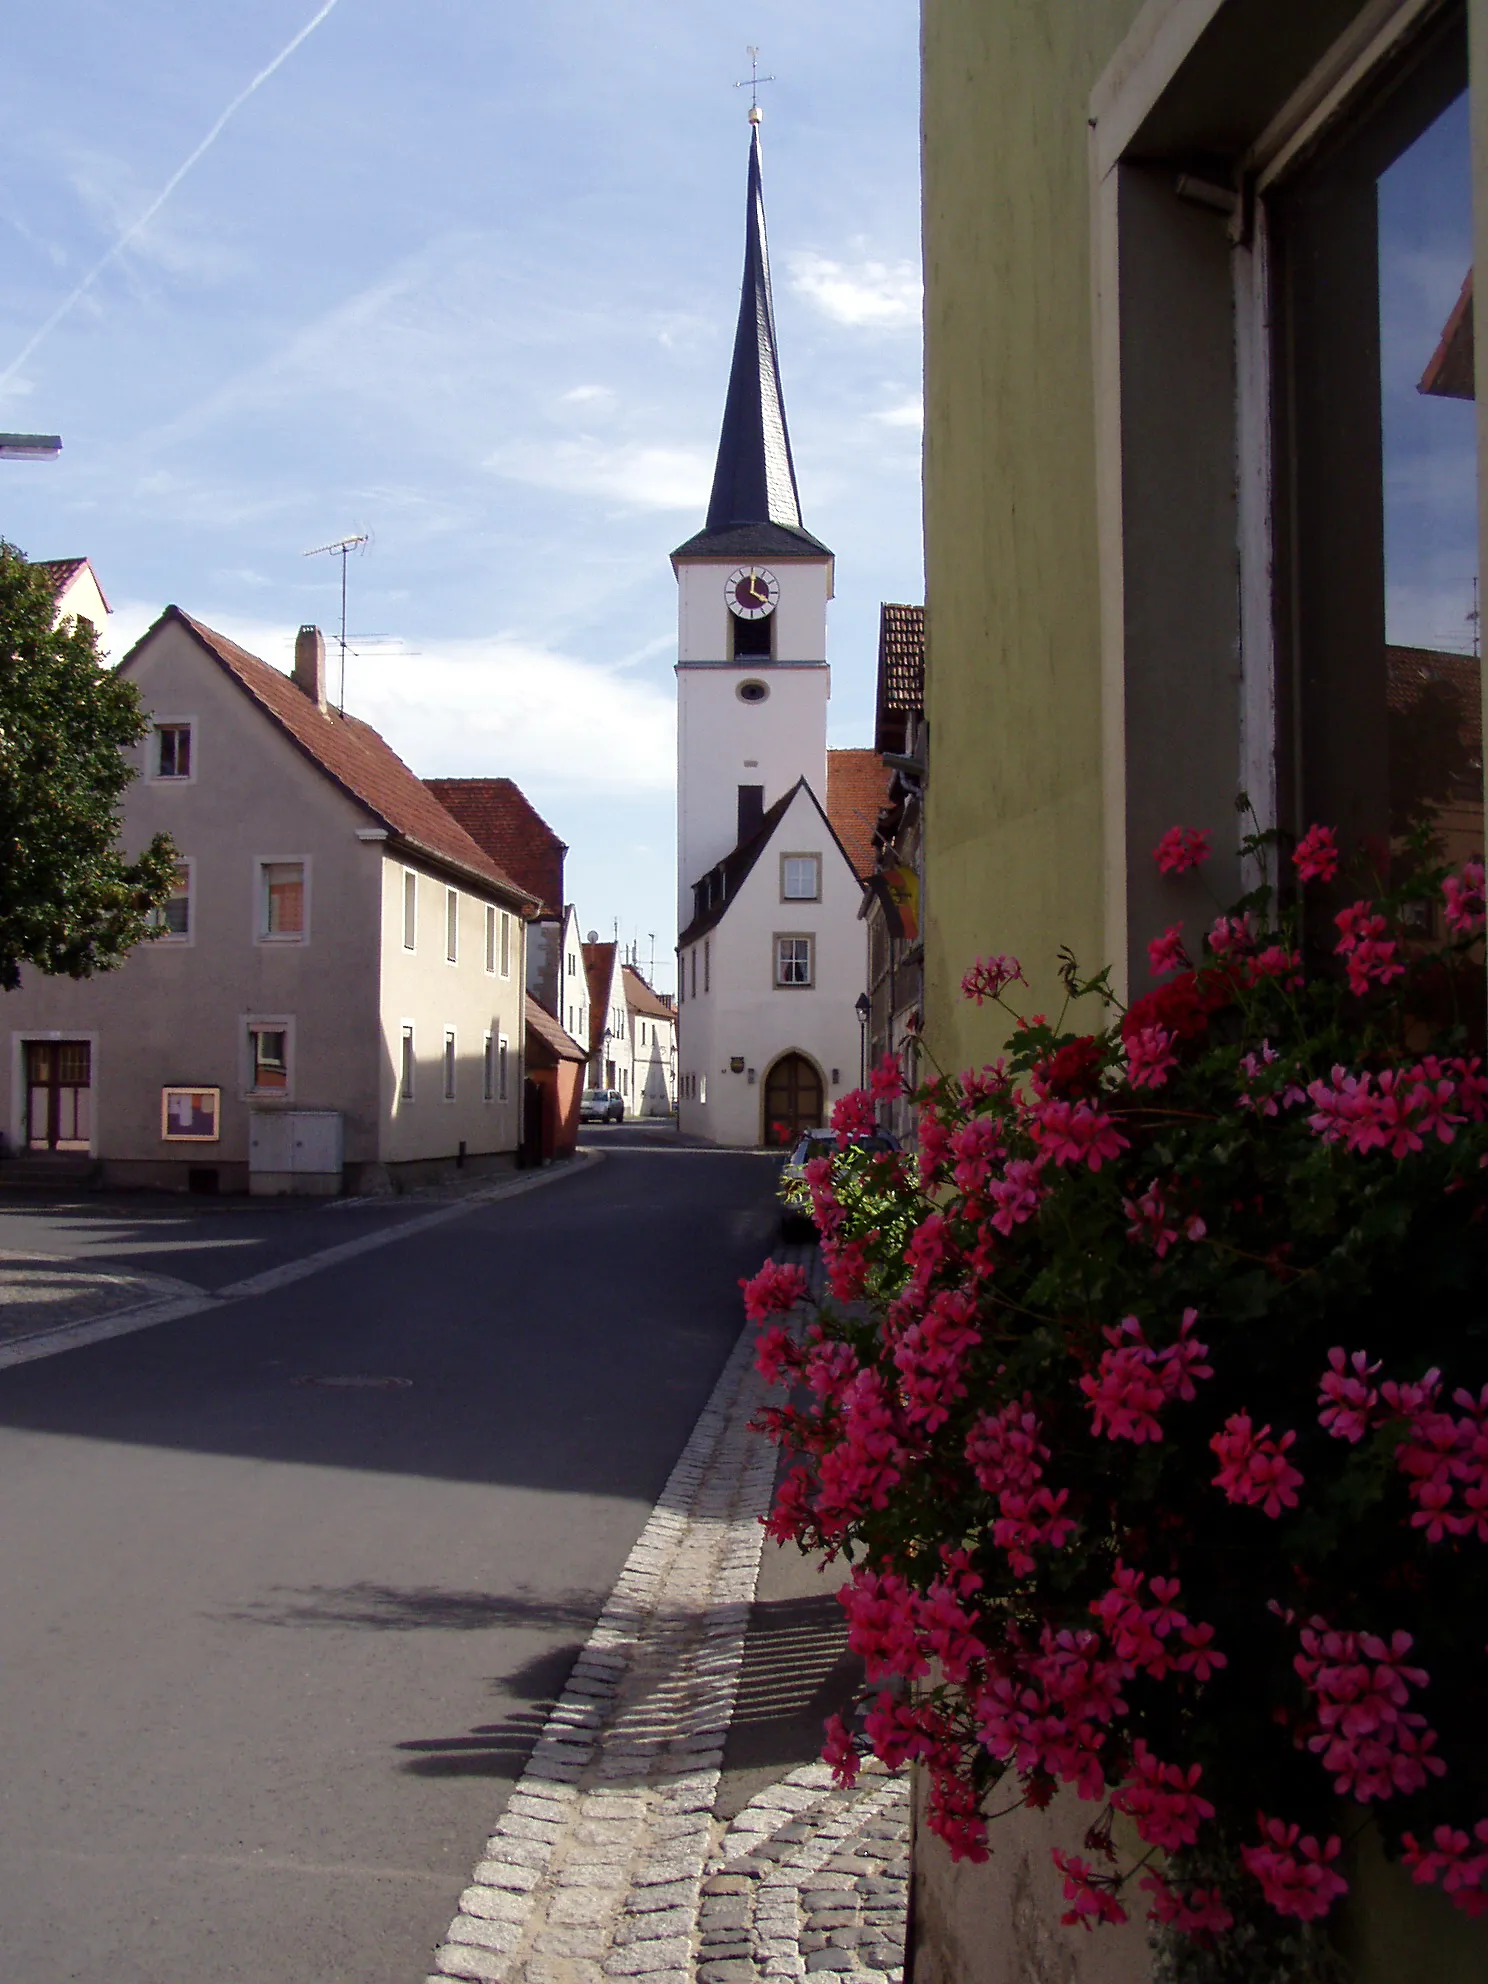 Image of Albertshofen